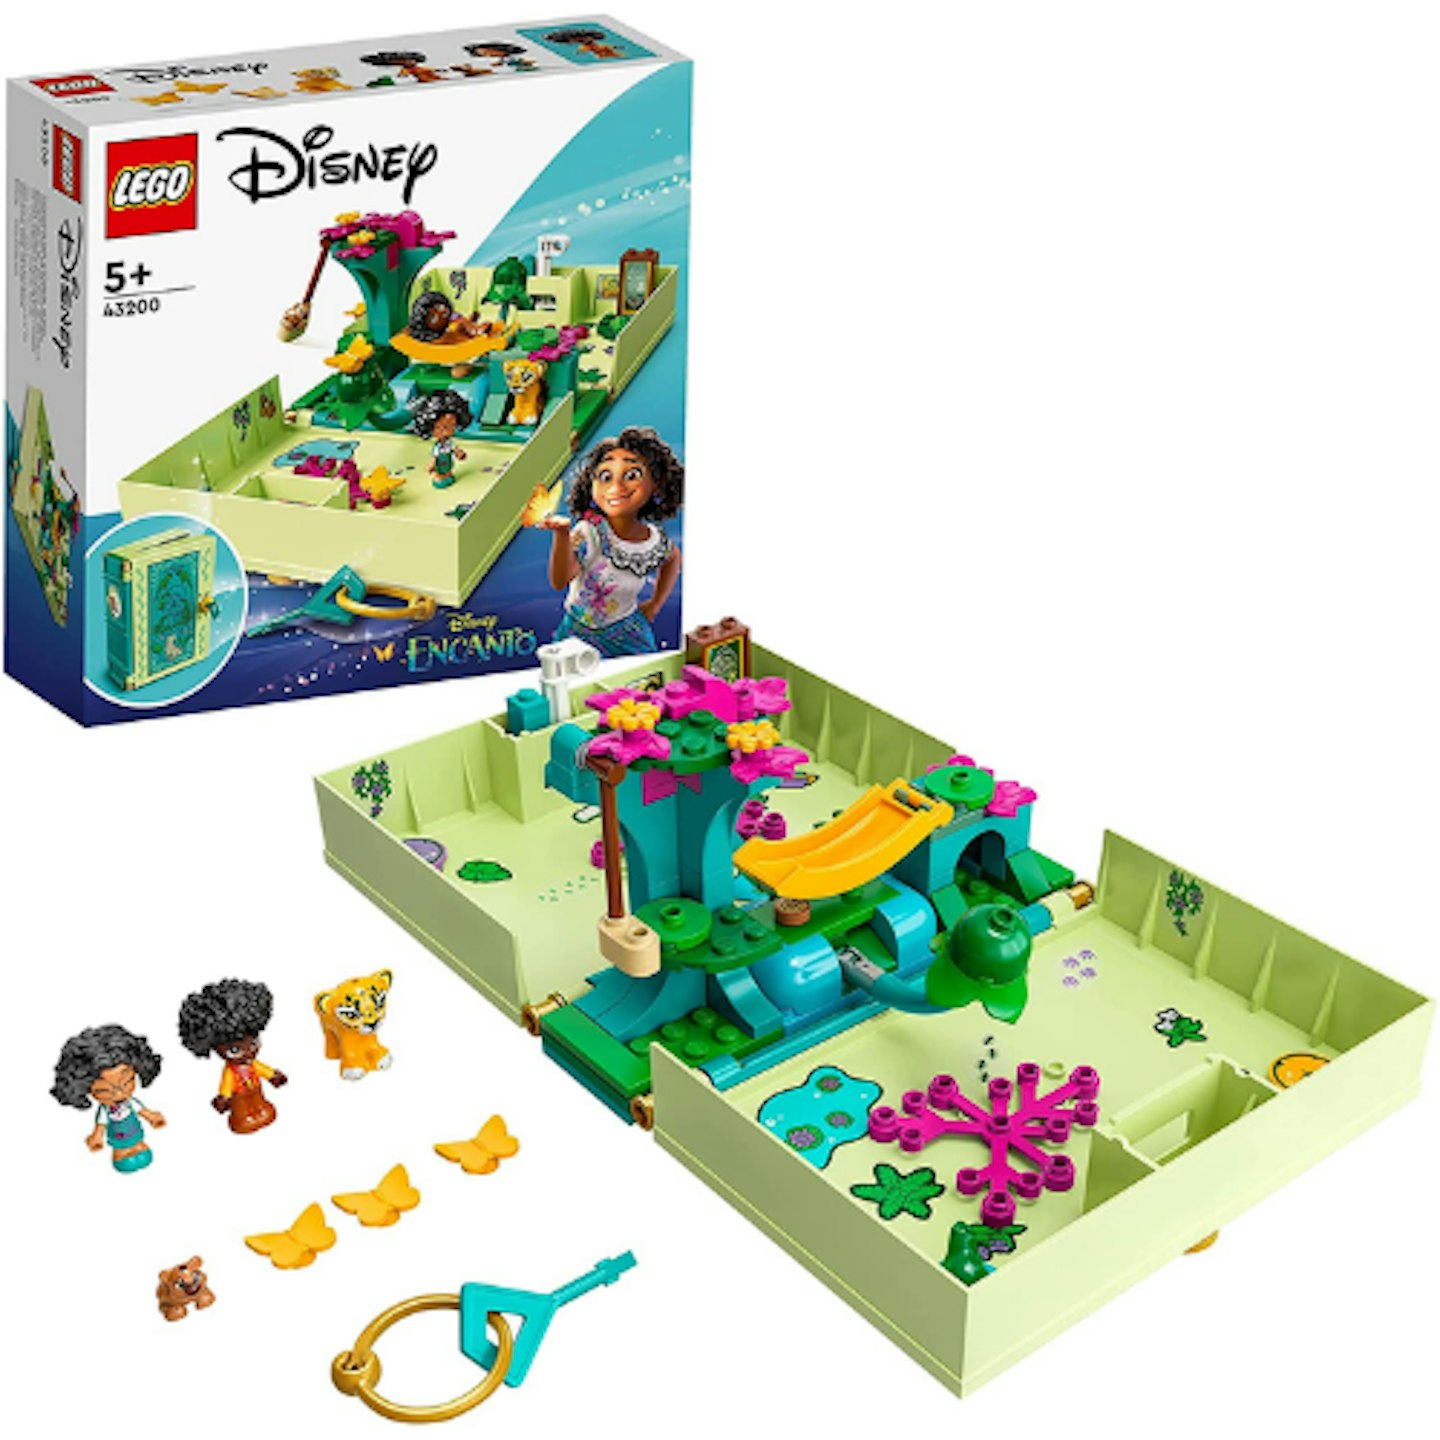 LEGO 43200 Disney Princess Antonio’s Magical Door